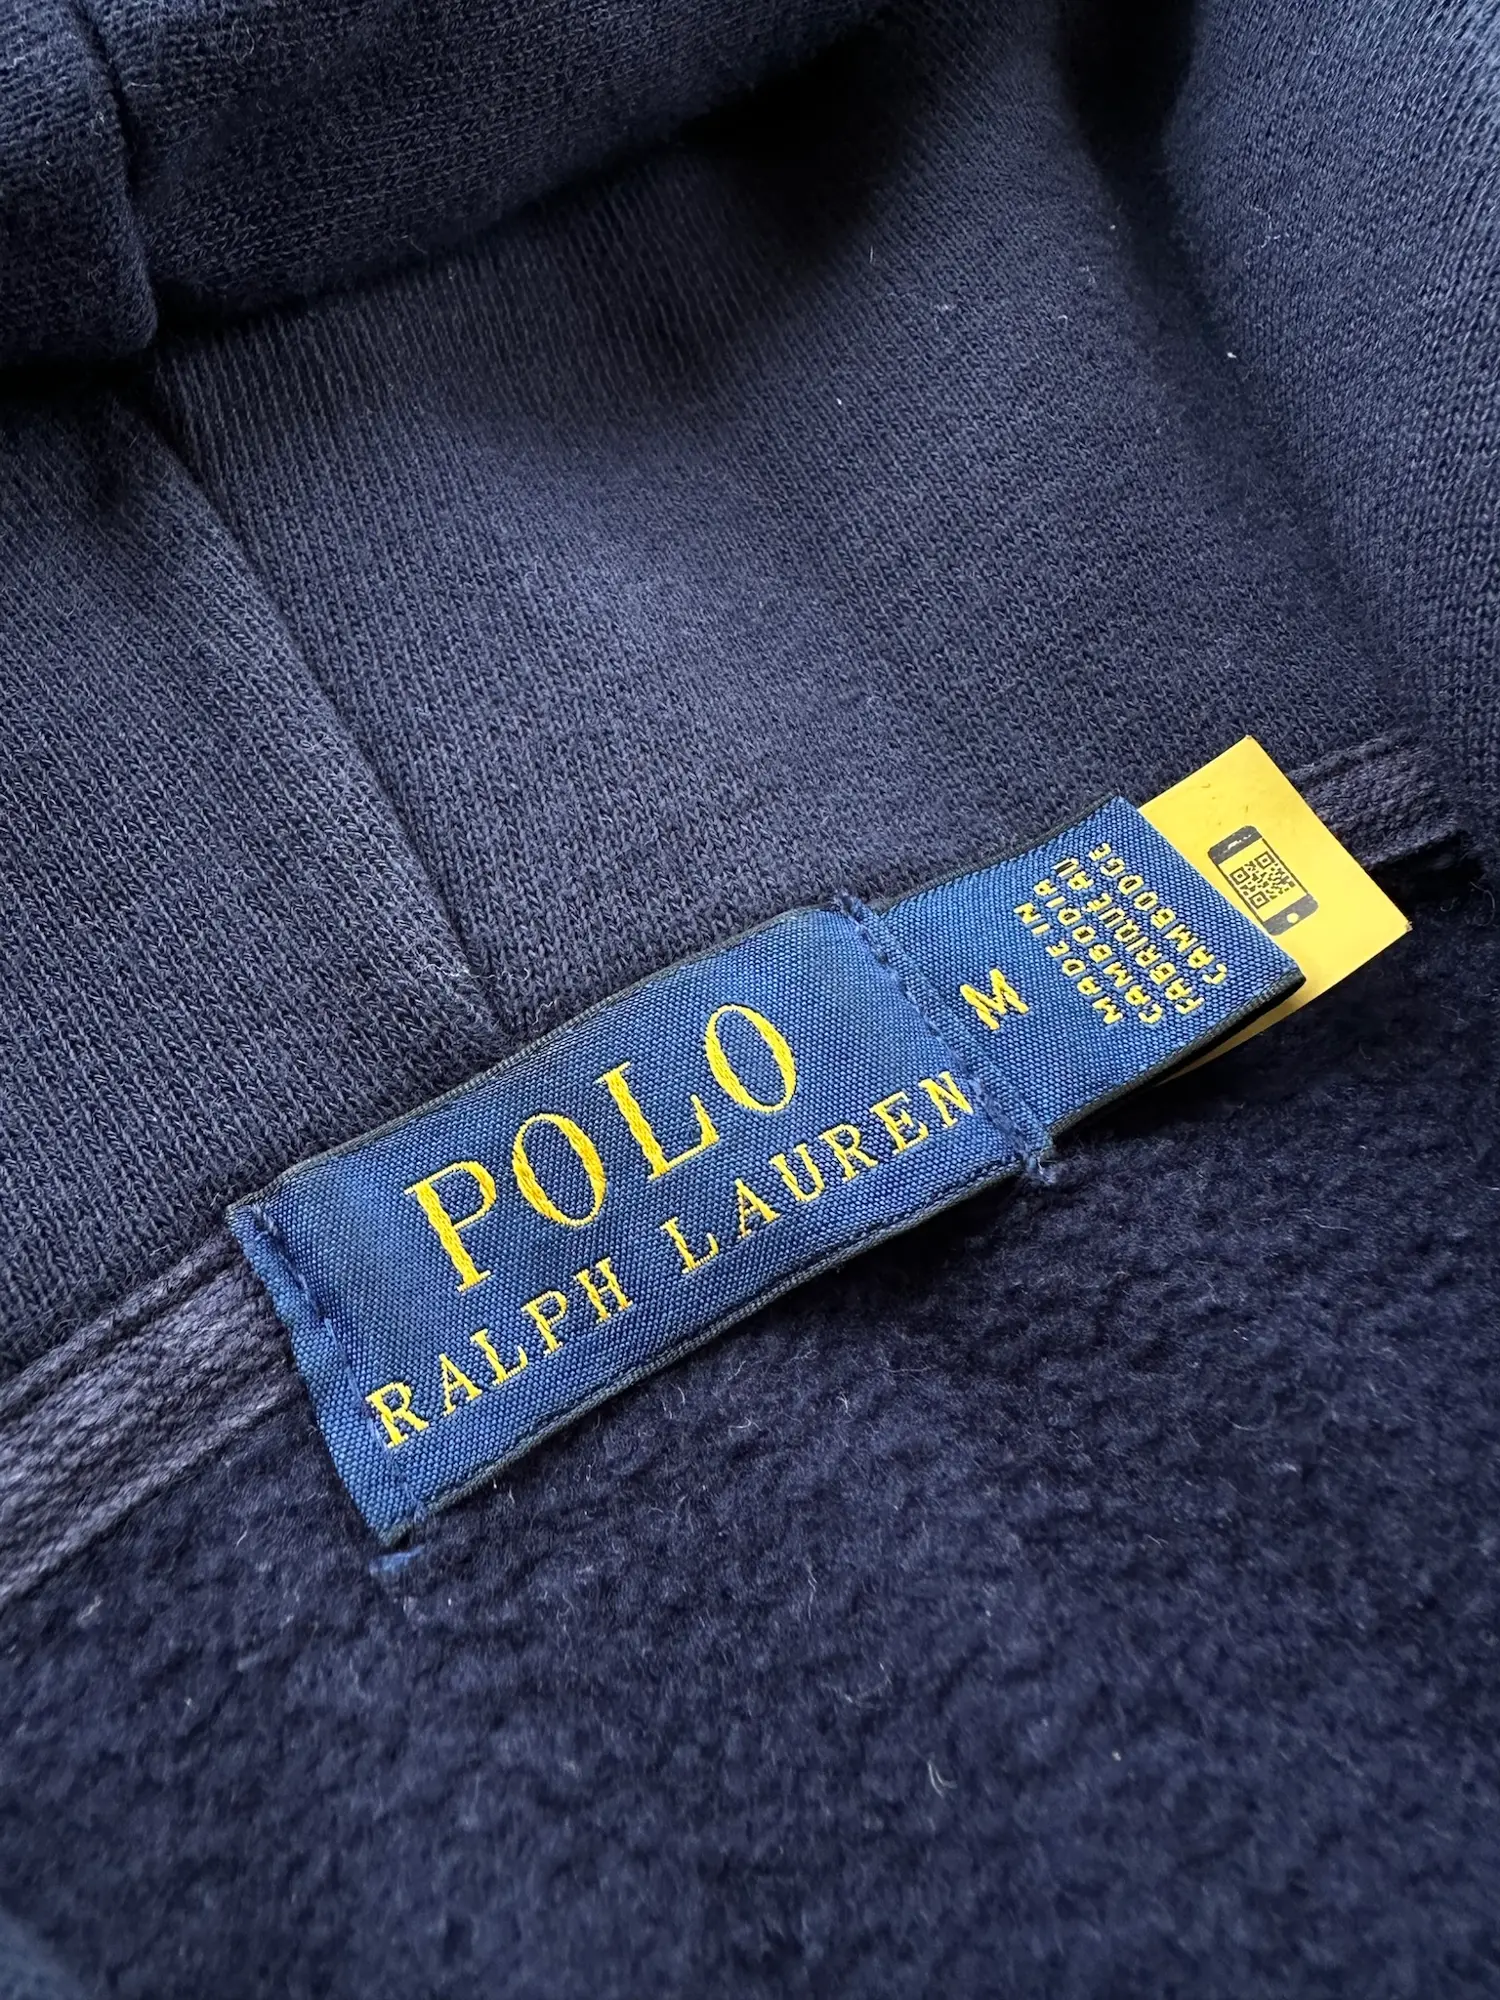 Polo Ralph Lauren hættetrøje